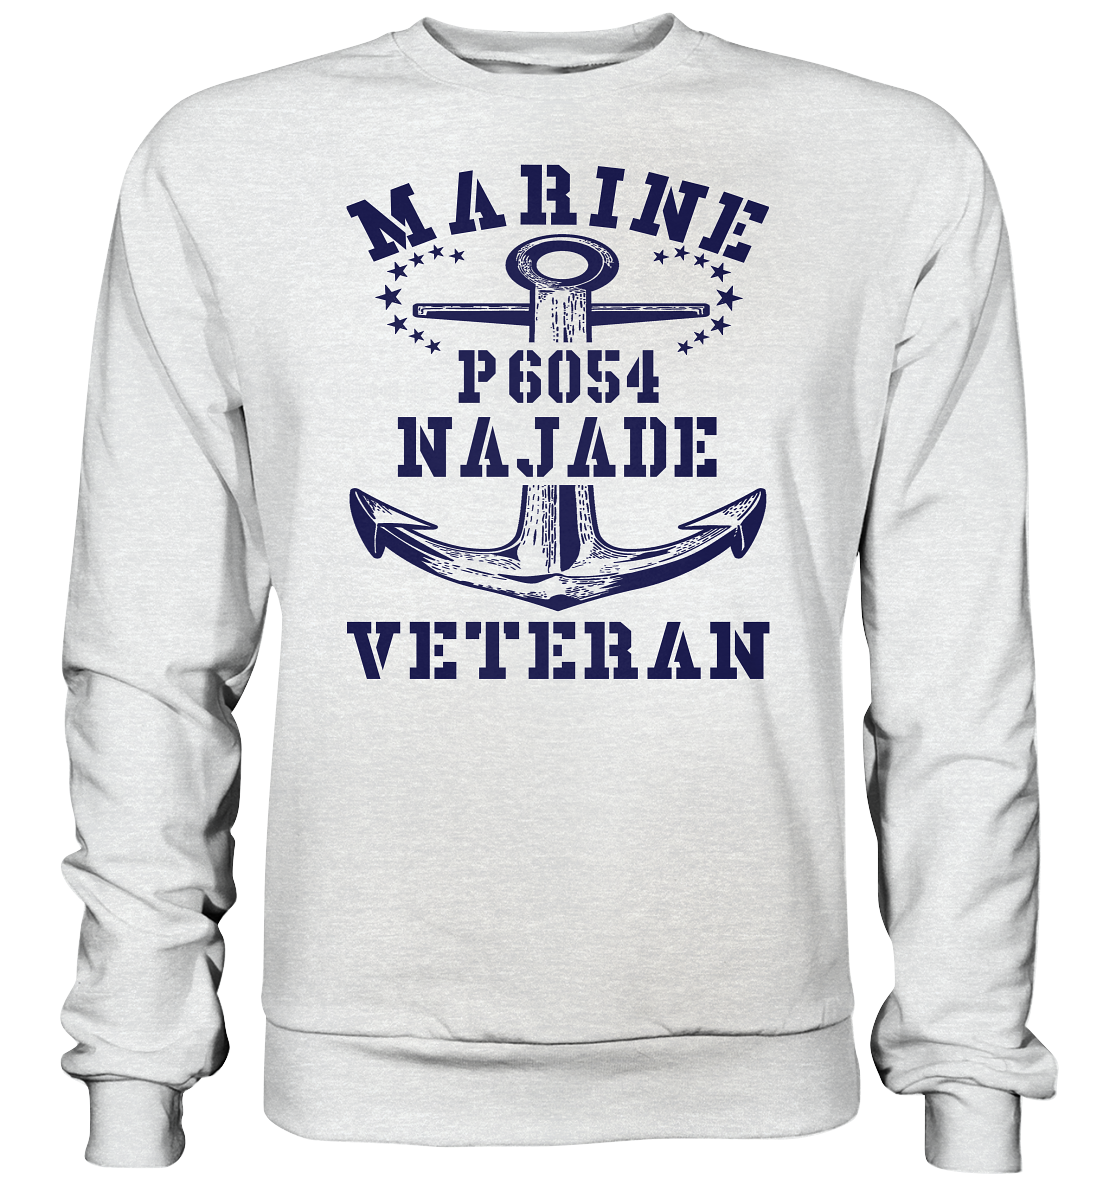 U-Jagdboot P6054 NAJADE Marine Veteran - Premium Sweatshirt